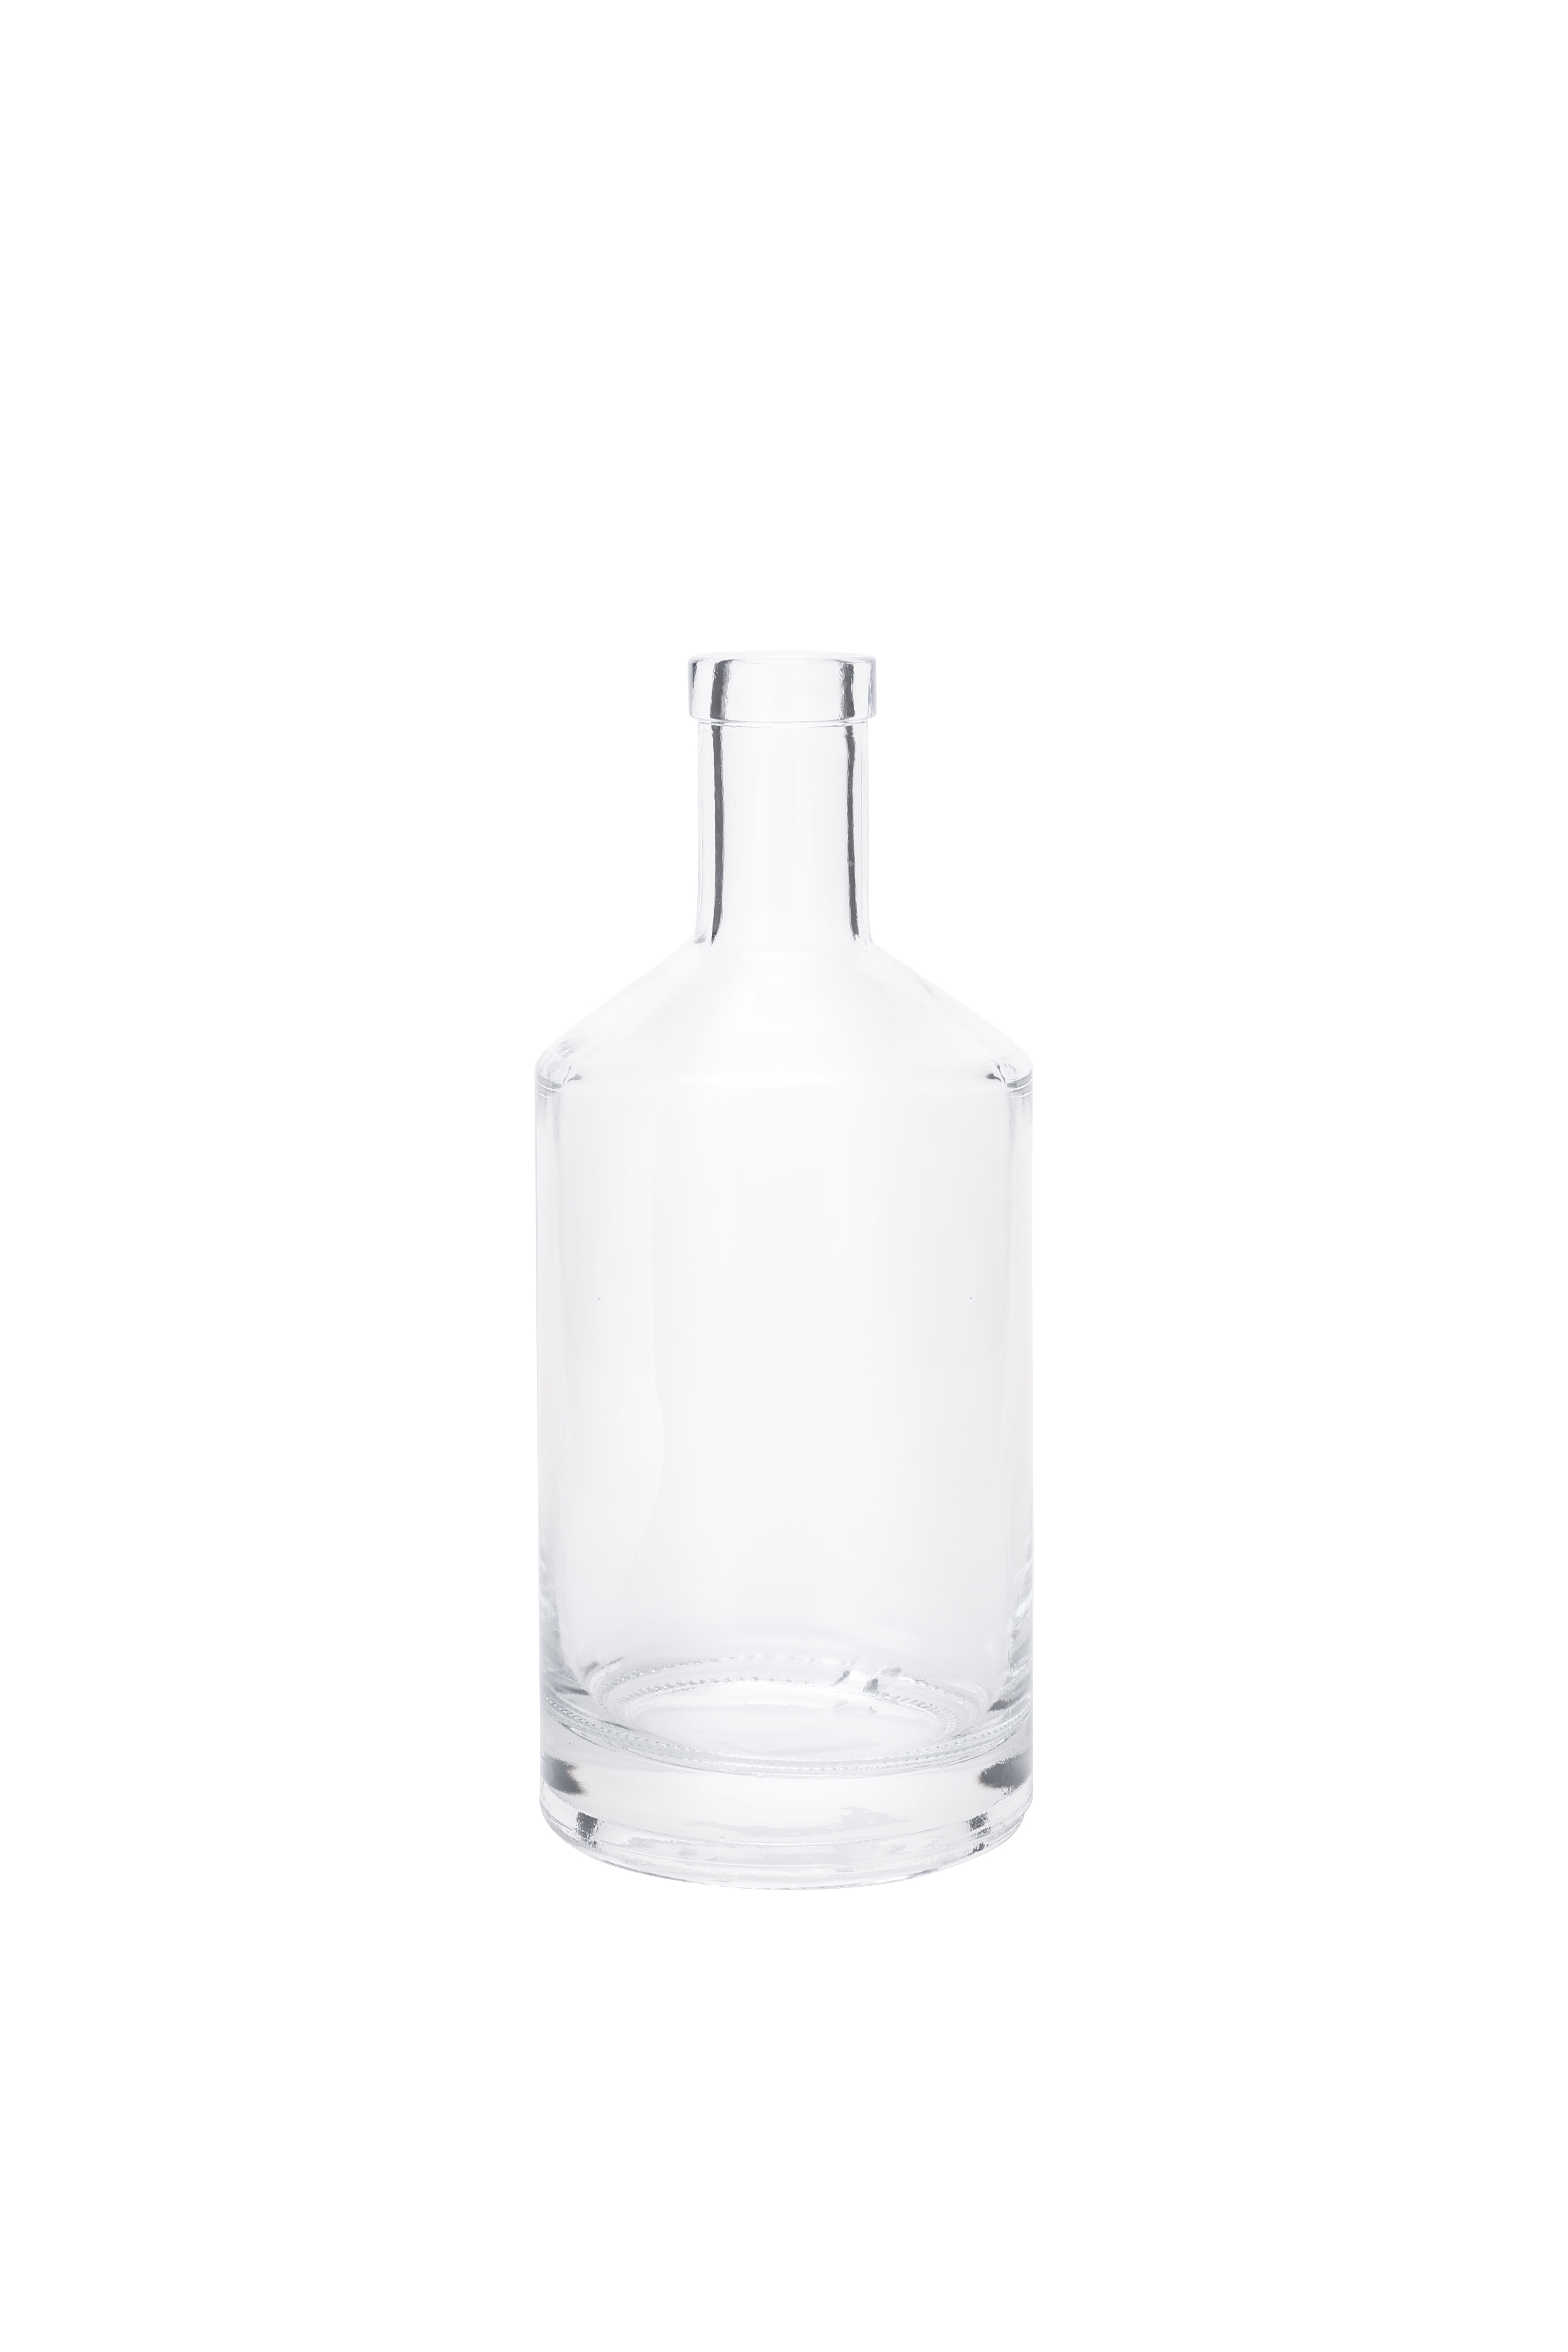 750ml Metal Labels Rum Whiskey Vodka Liquor Glass Bottle